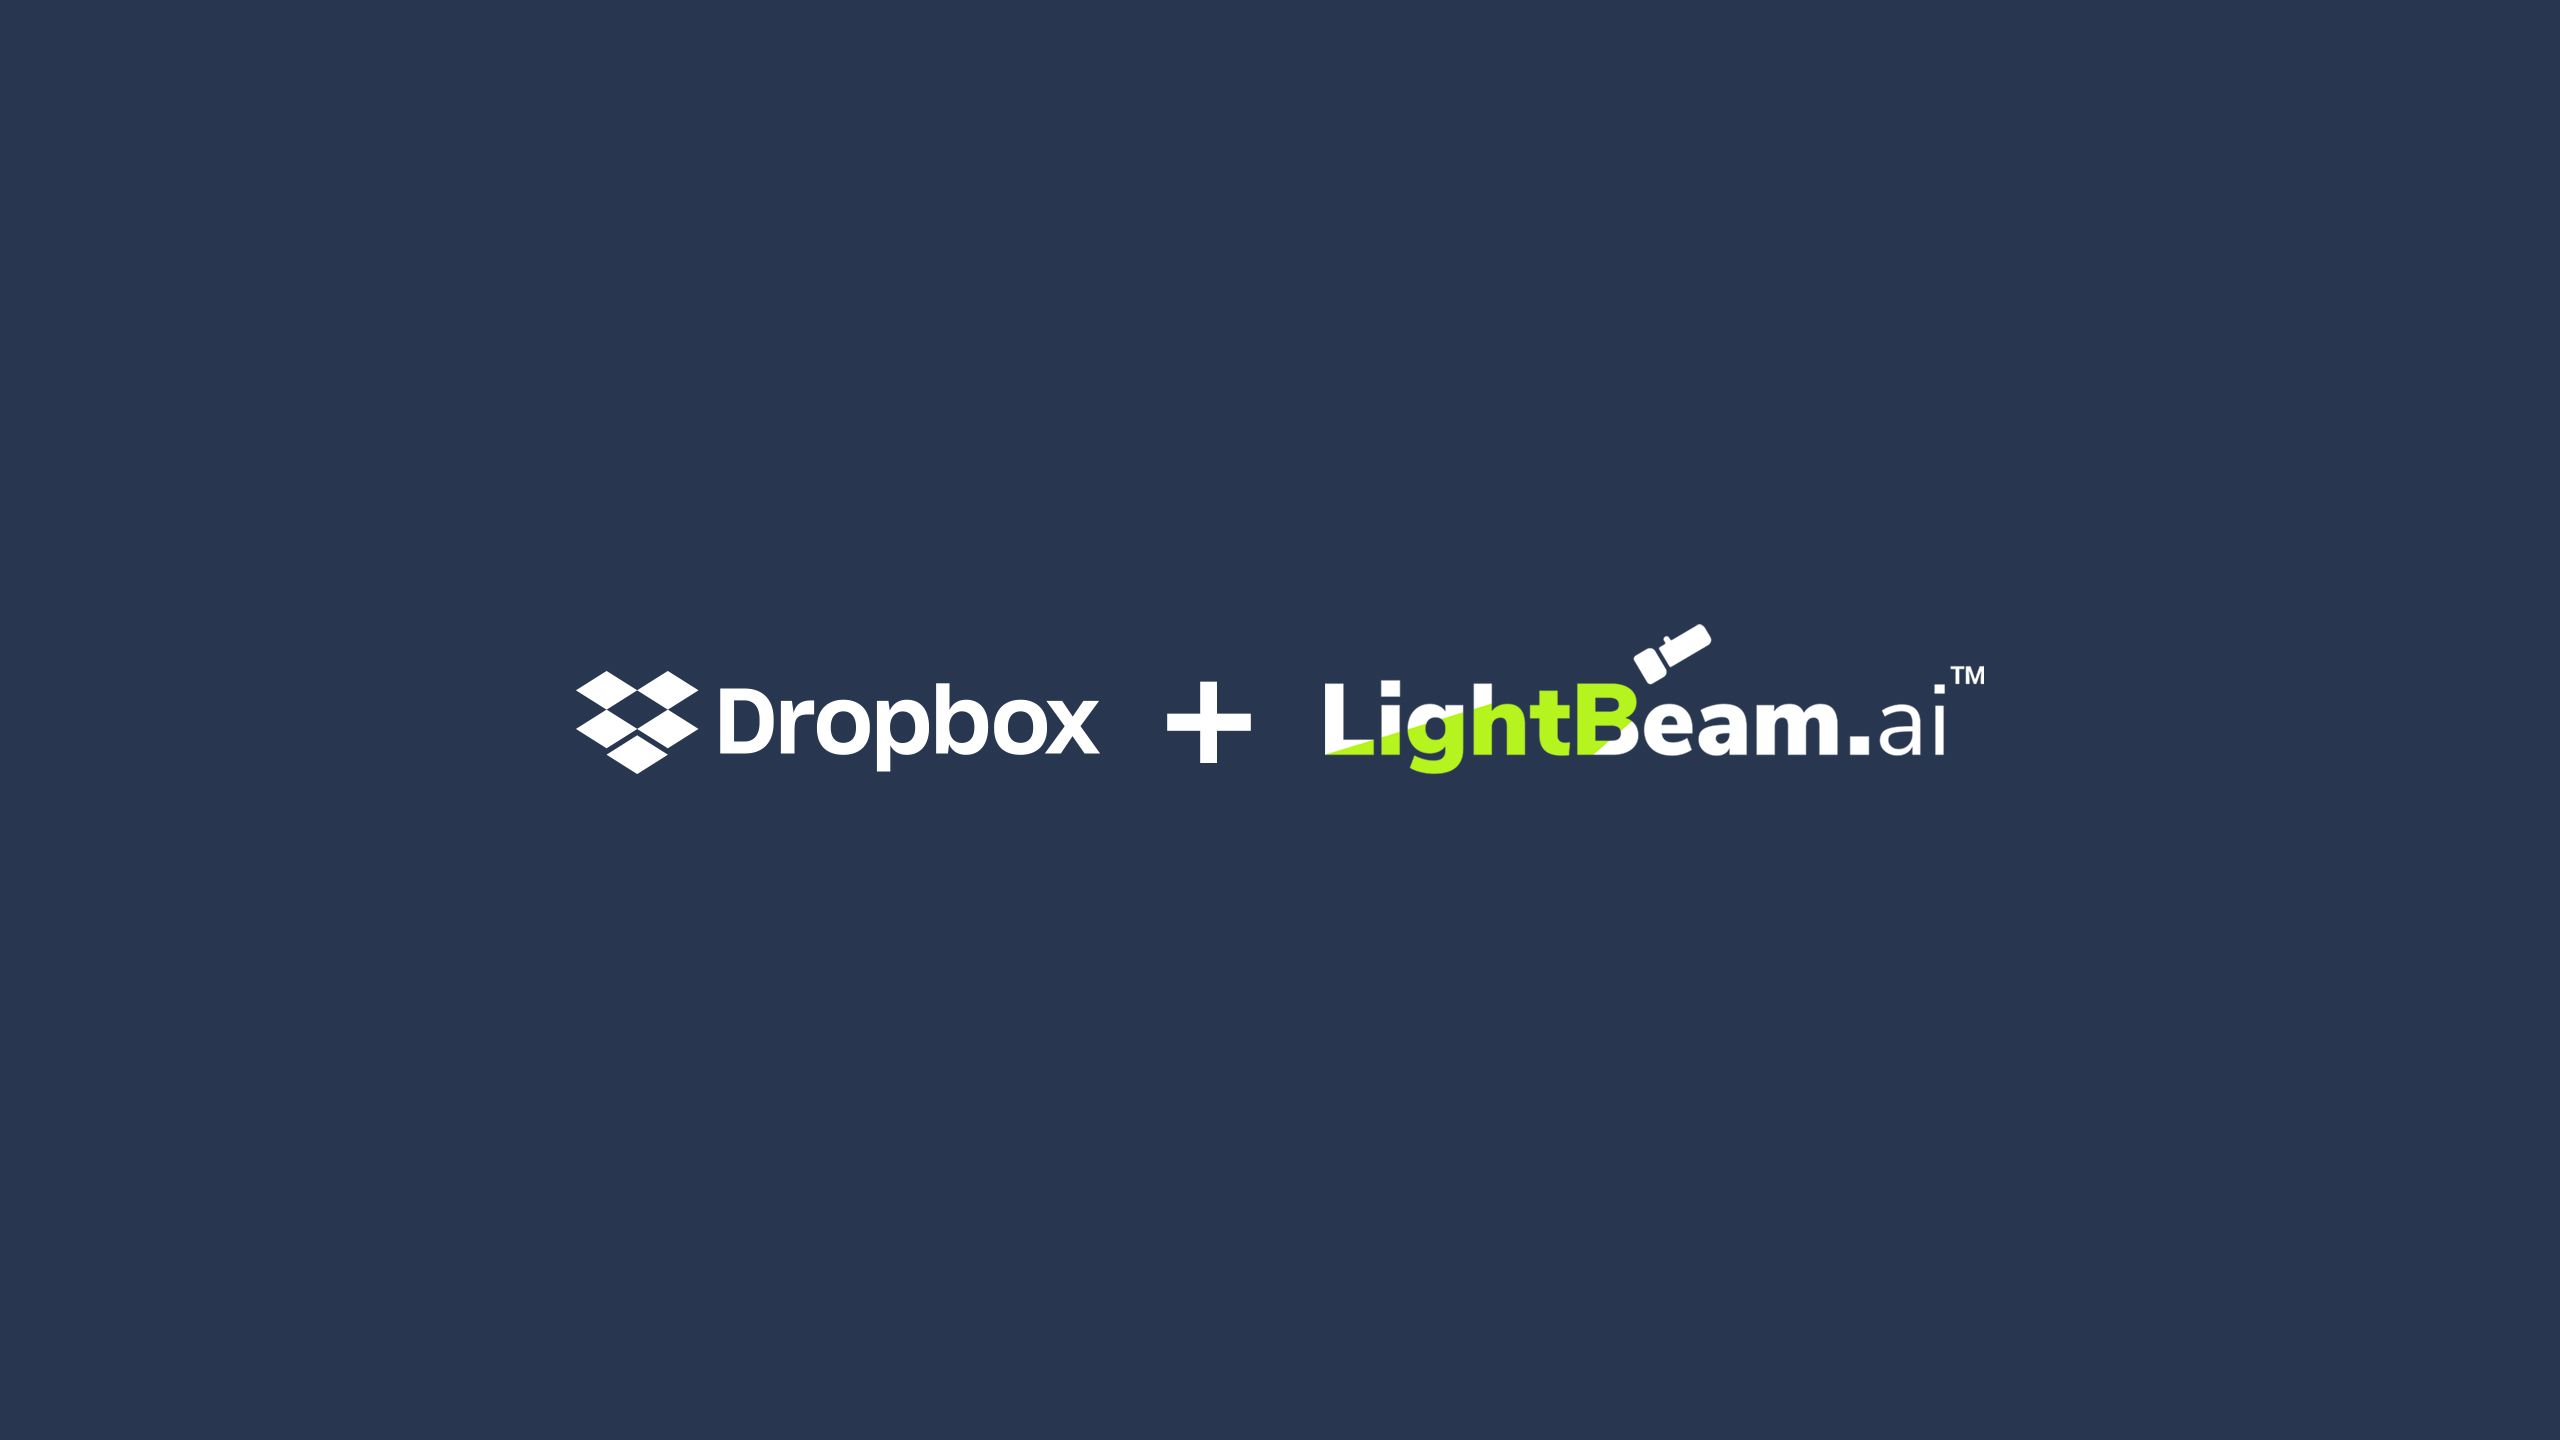 Dropbox 和 LightBeam.ai 徽标锁定